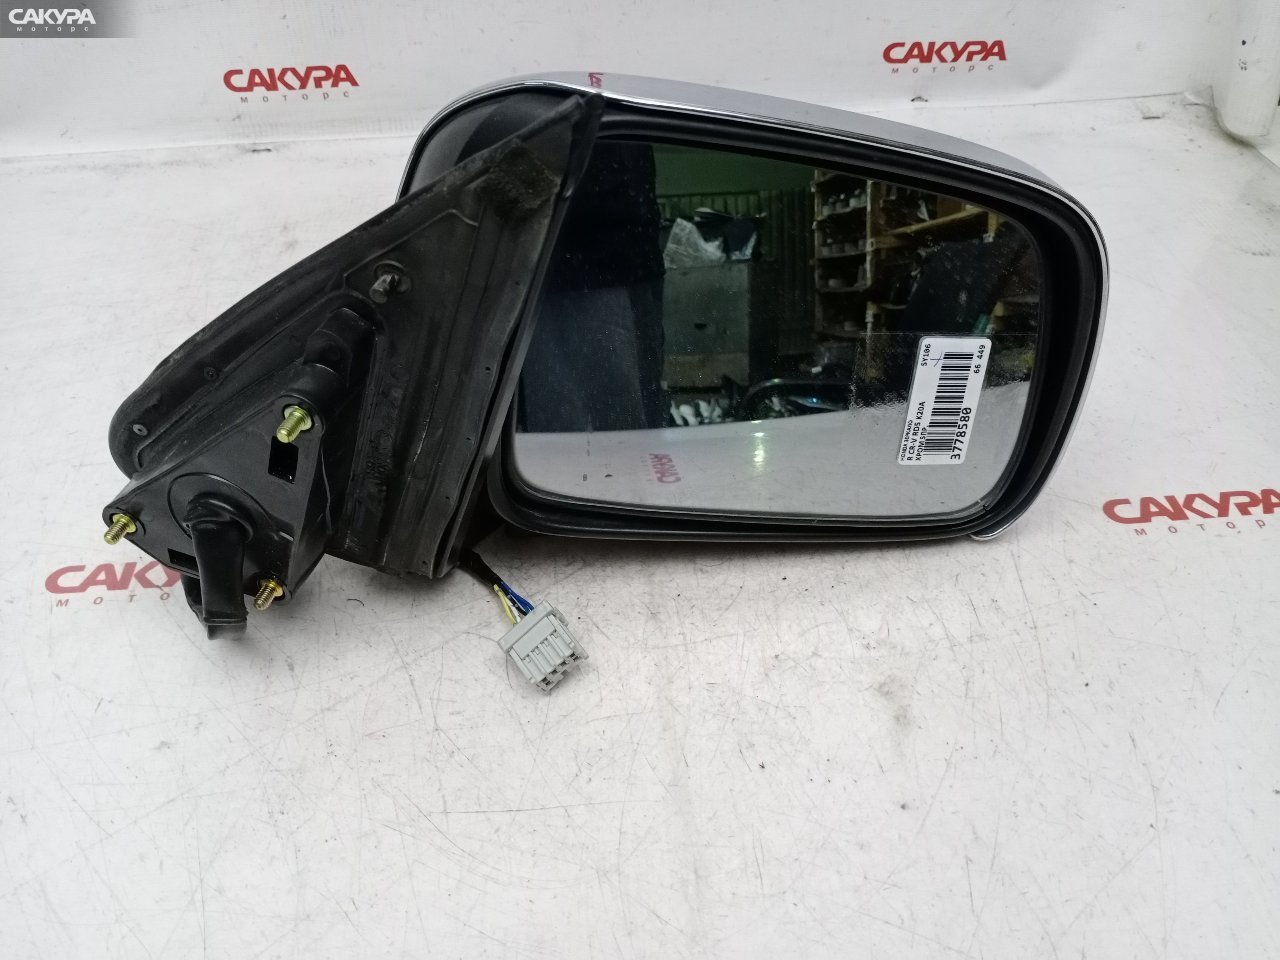 Зеркало боковое правое Honda CR-V RD5 K20A: купить в Сакура Красноярск.